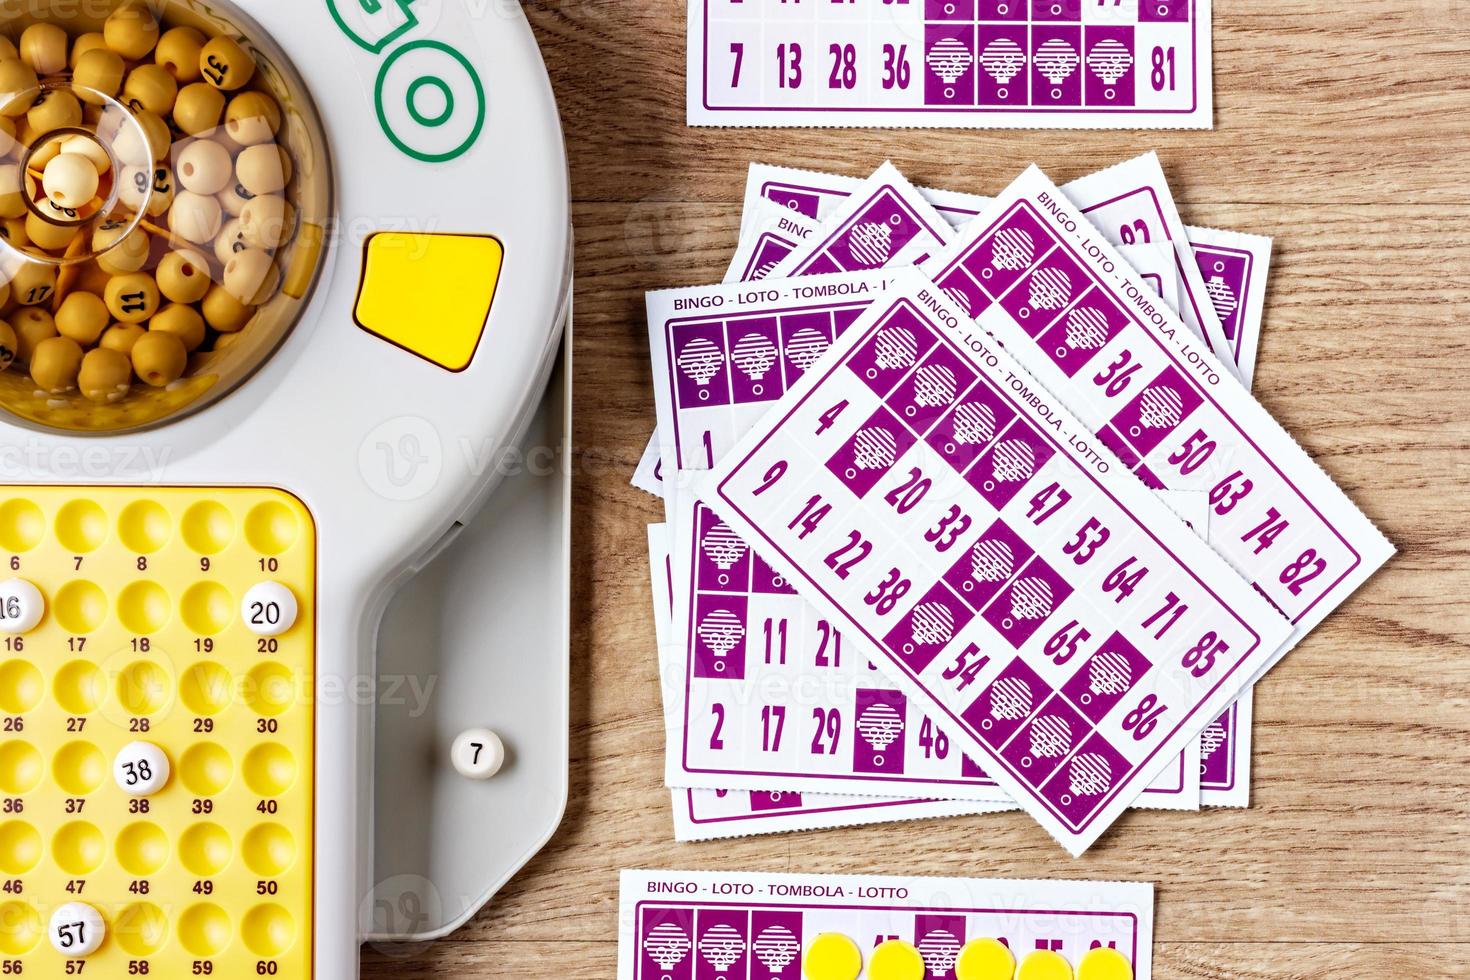 jogo de bingo eletrônico com cartas e fichas para jogar. imagem horizontal vista de cima. foto